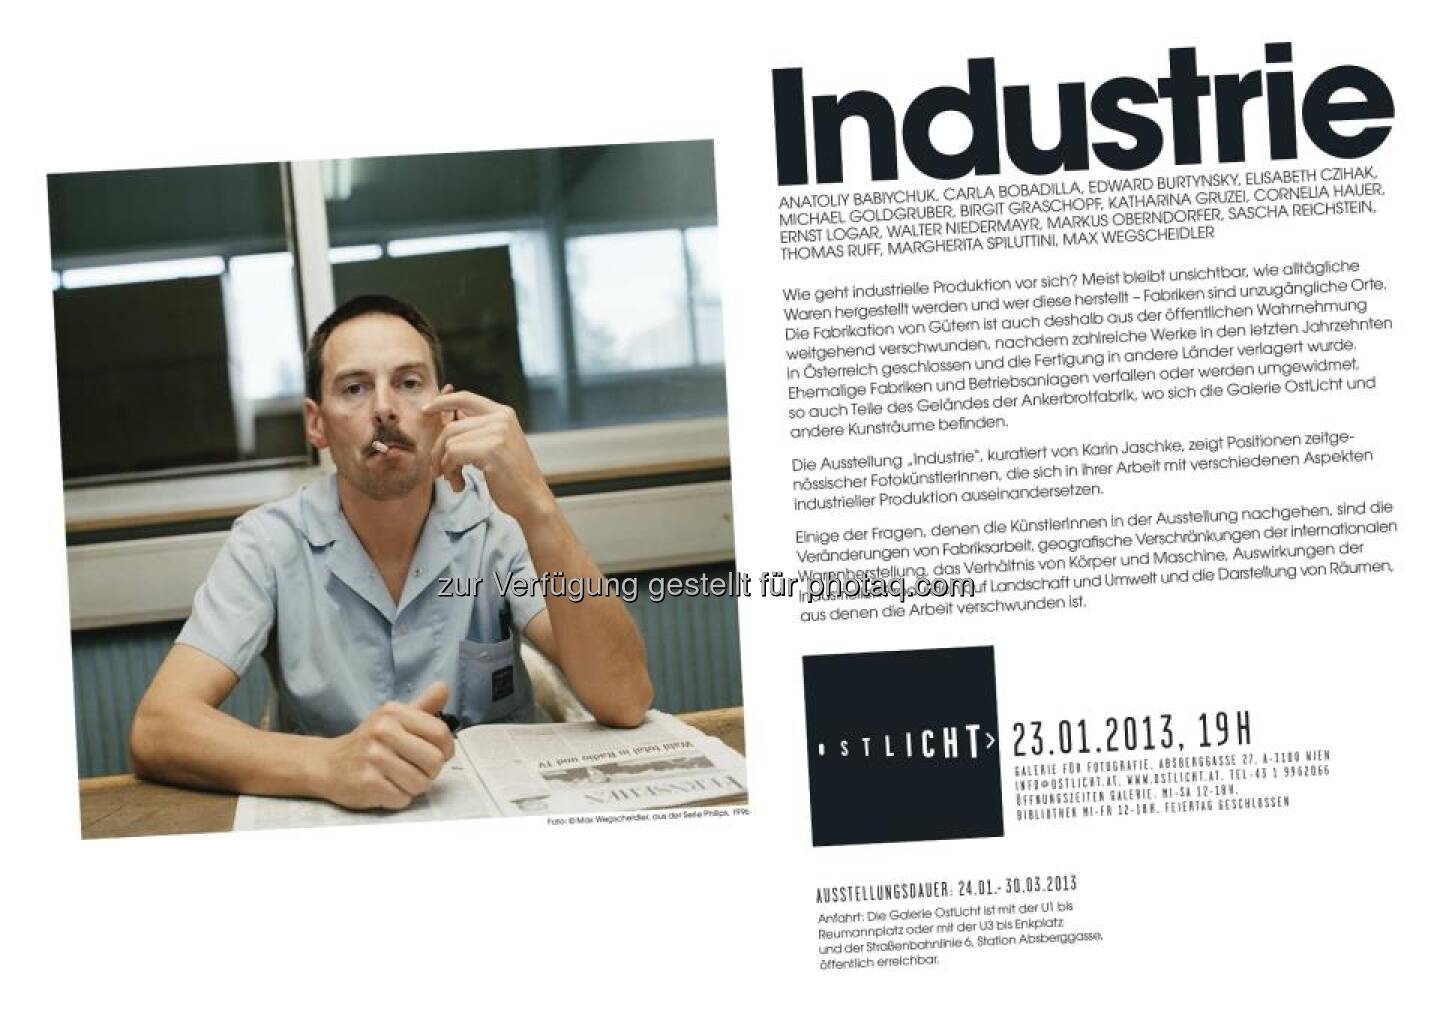 Einladung Industrie, 23.1.2013